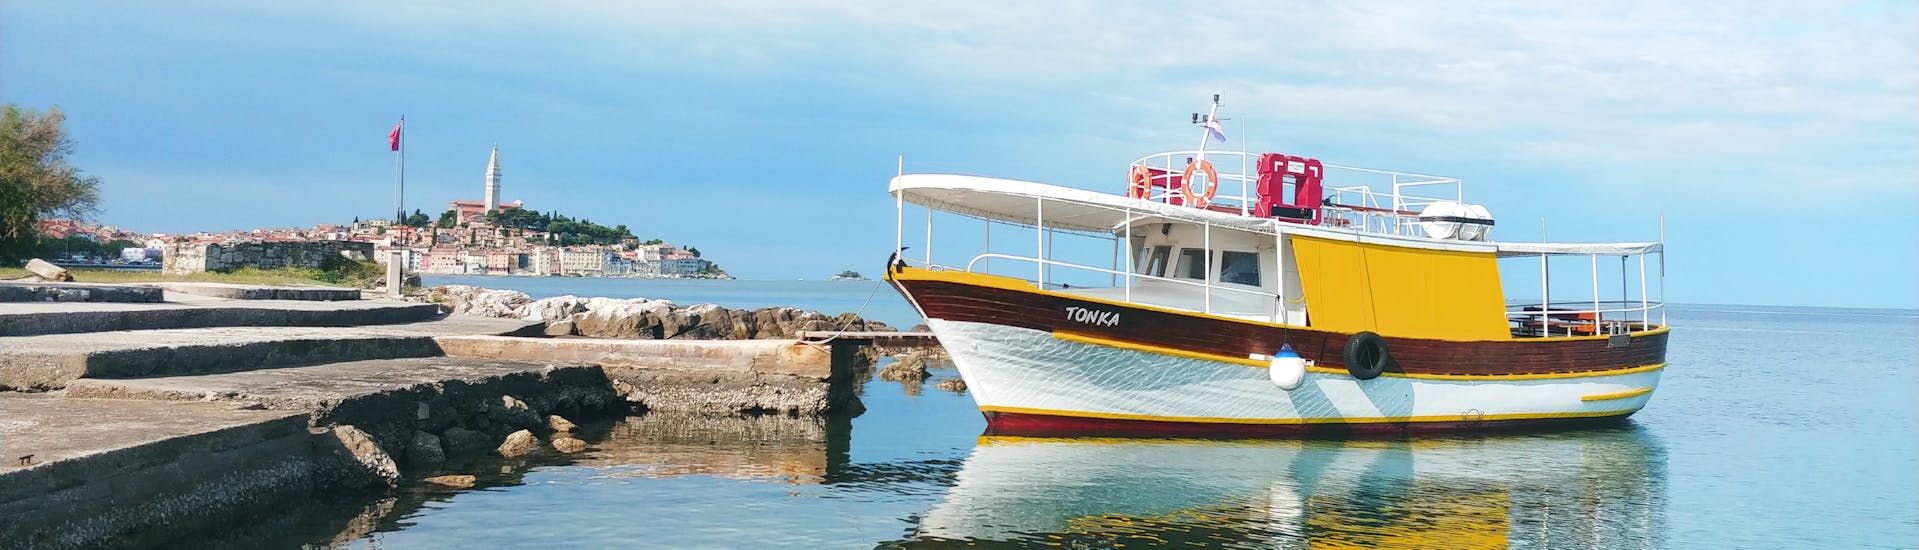 Bild des Bootes Tonka während der Bootstour zum Lim Fjord, veranstaltet von Boat Excursions Tonka Rovinj.